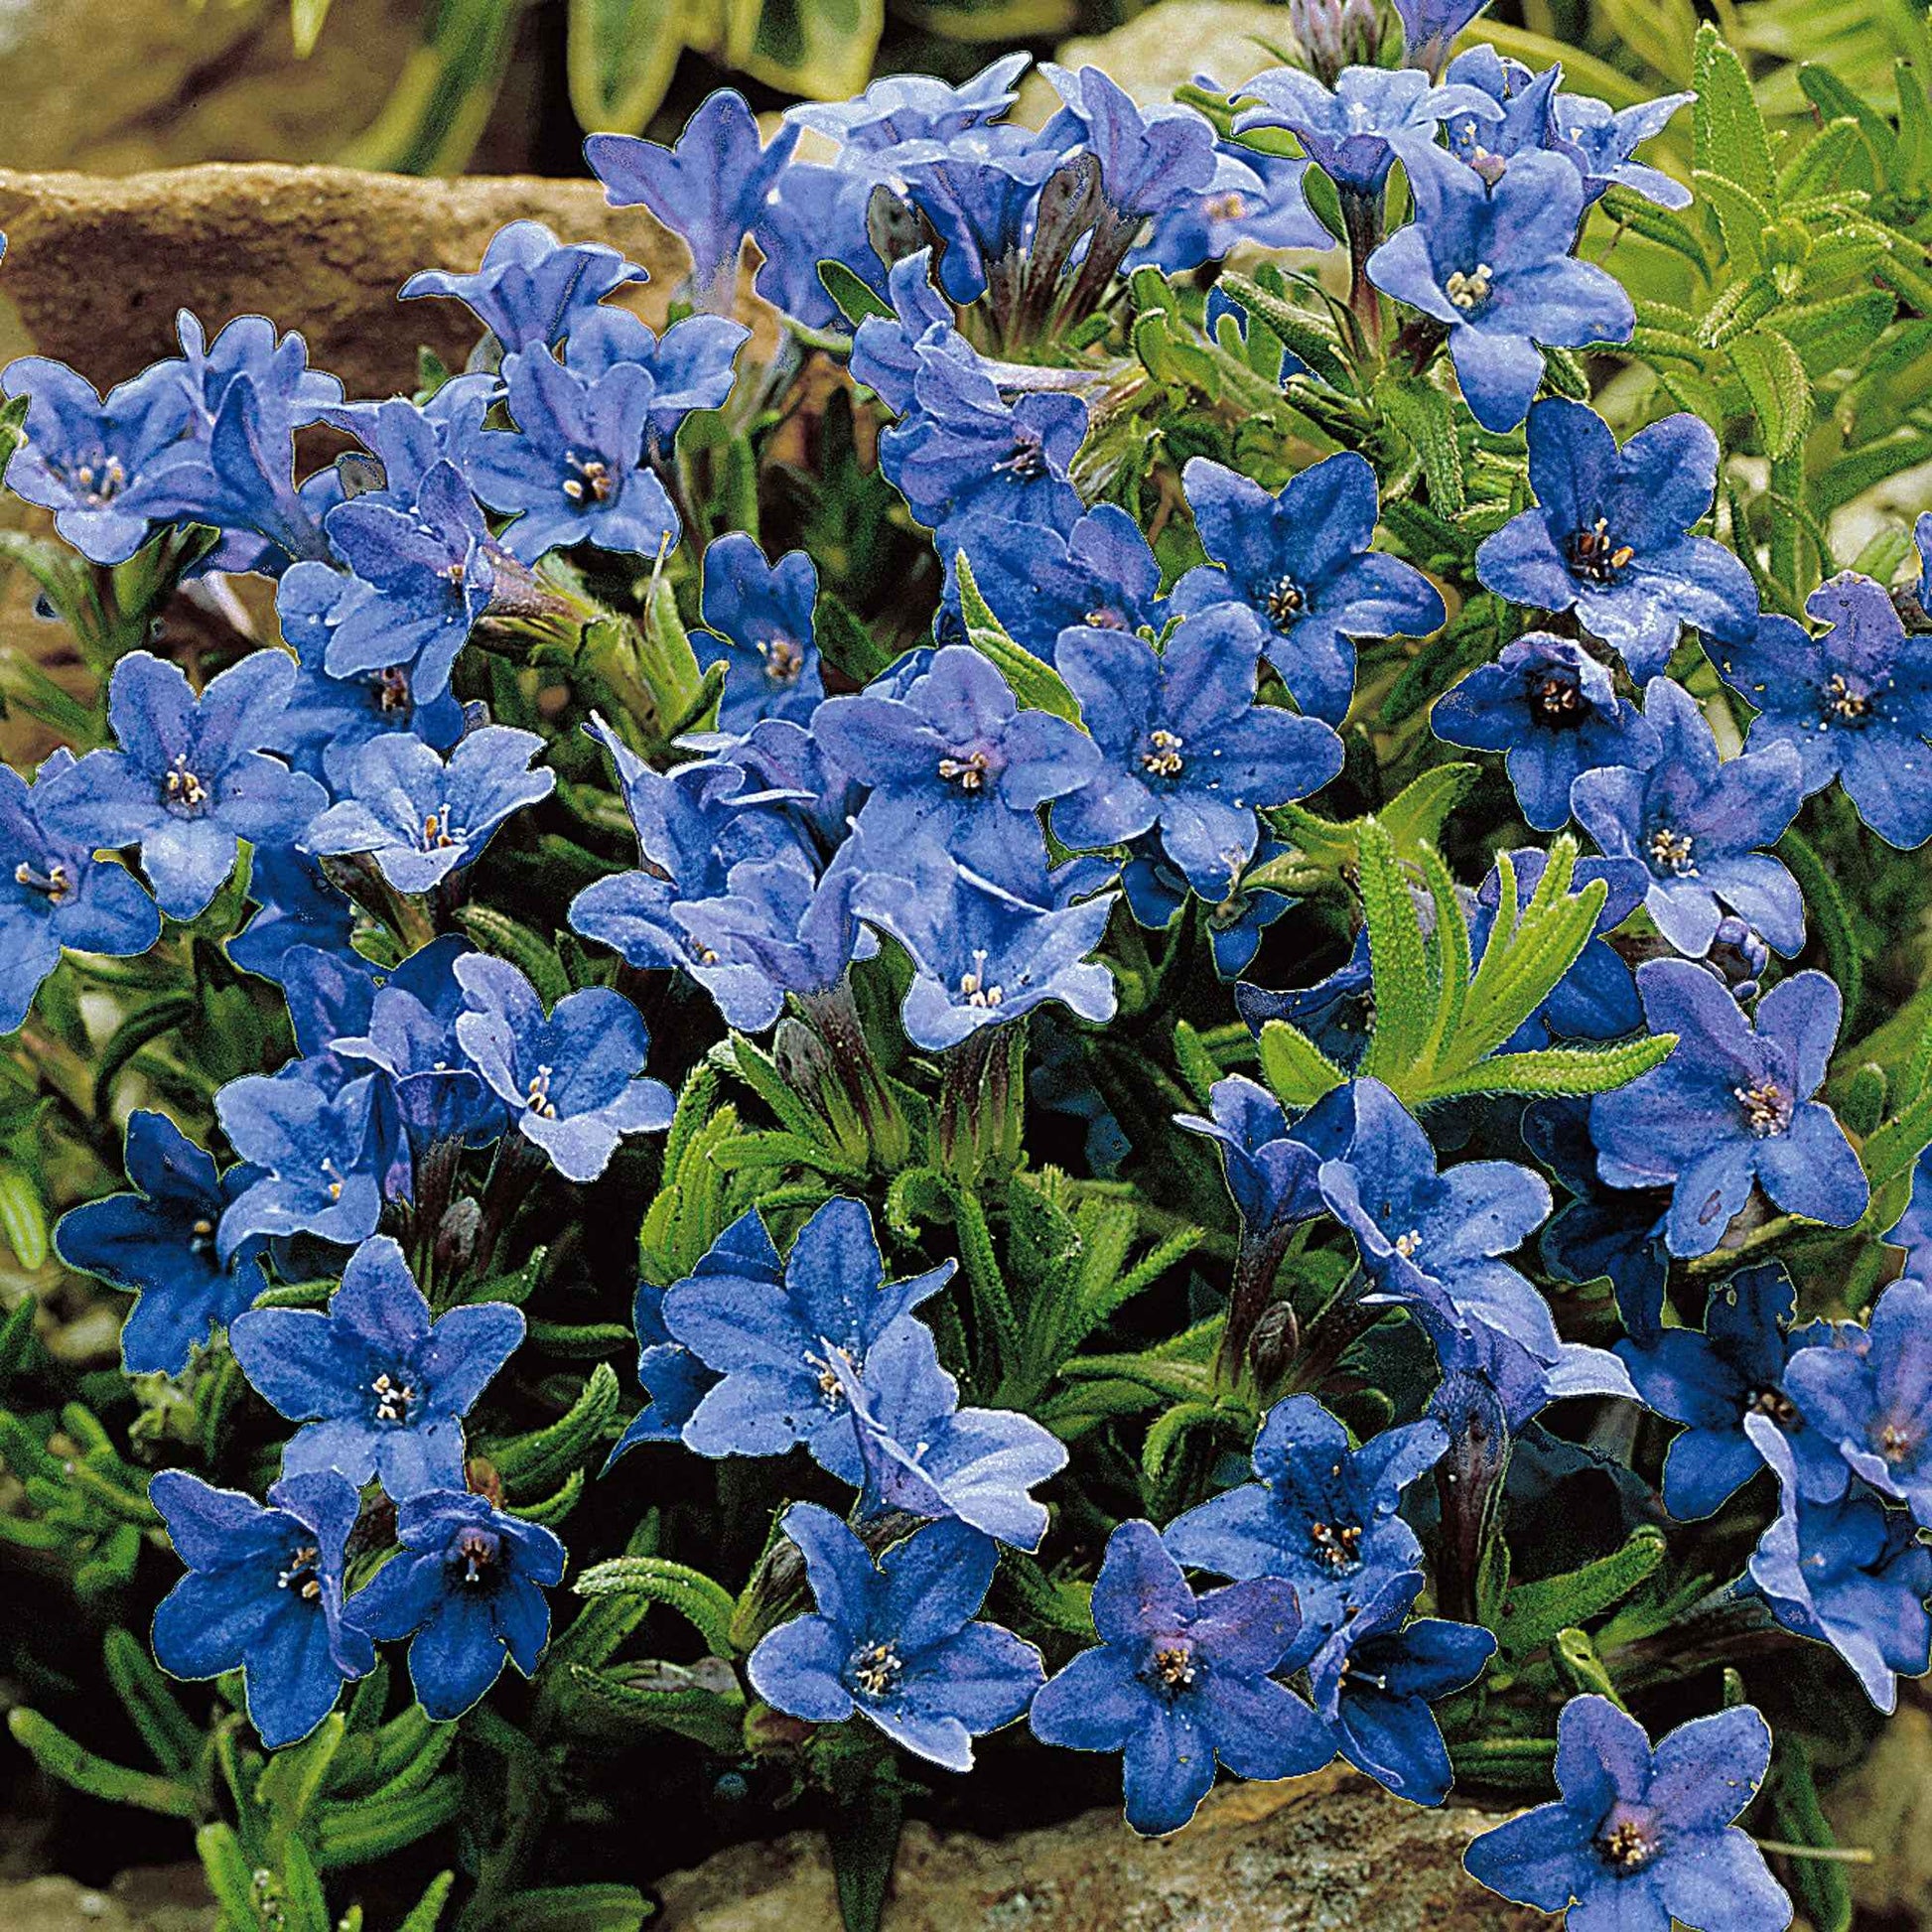 Steinsame 'Heavenley Blue' - Lithodora diffusa heavenly blue - Gartenpflanzen